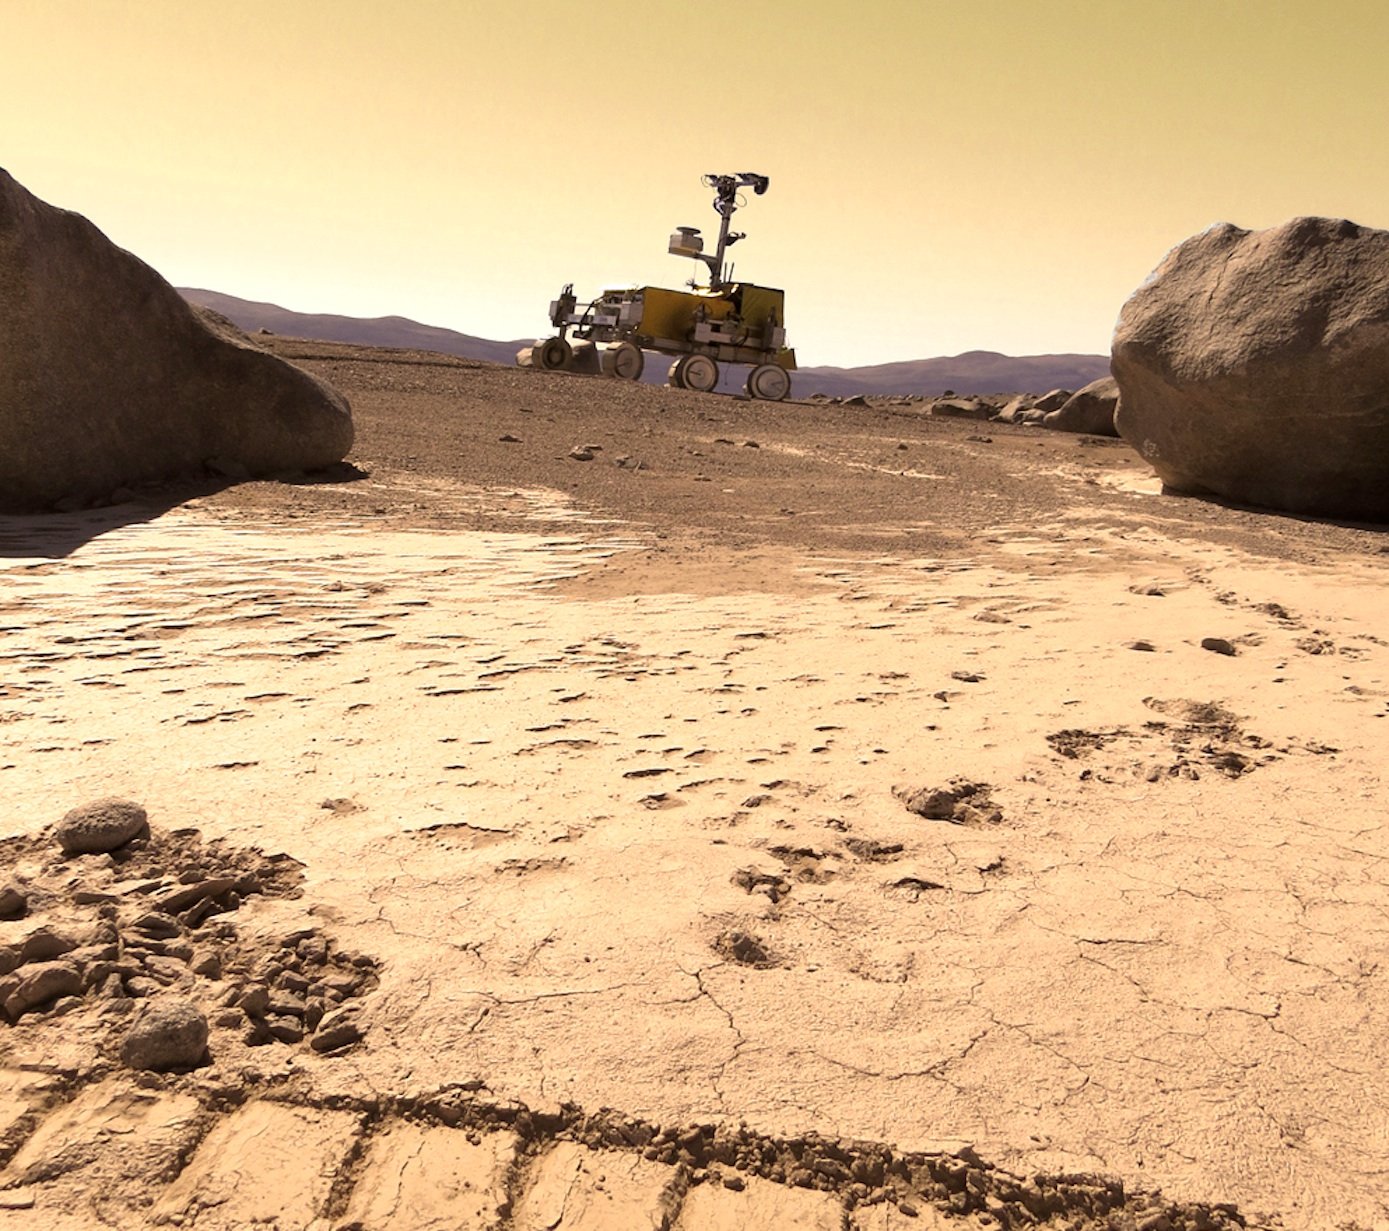 Der Mars-Rover Bridget wurde schon Ende 2013 in der chilenischen Atacama-Wüste getestet, deren Beschaffenheit ebenfalls der Mars-Oberfläche ähnelt.